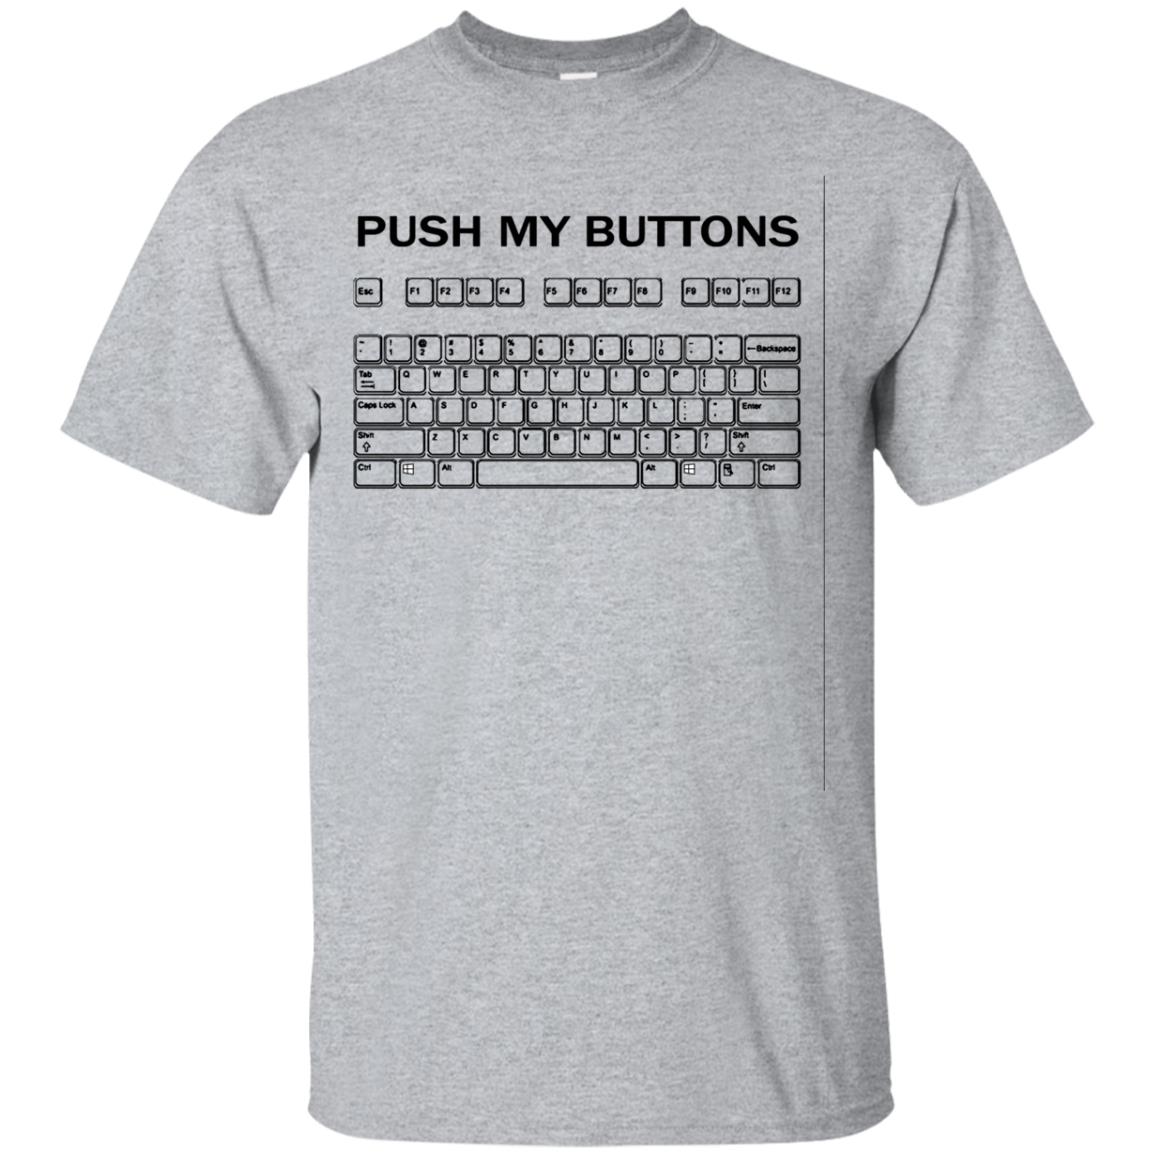 Push My Buttons Shirt - 10% Off - FavorMerch.